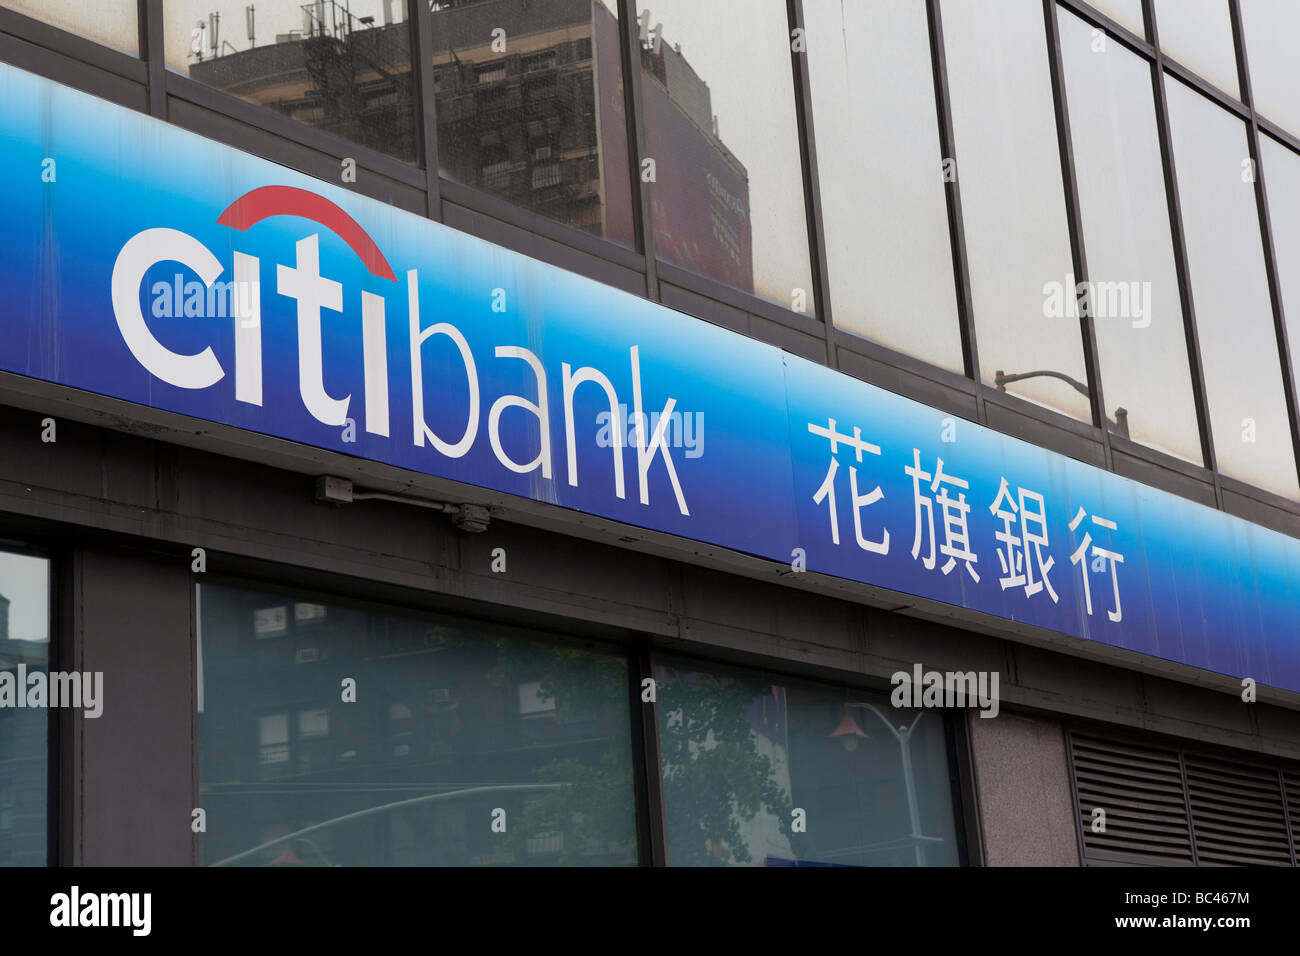 Citibank in Chinatown New York City Stock Photo